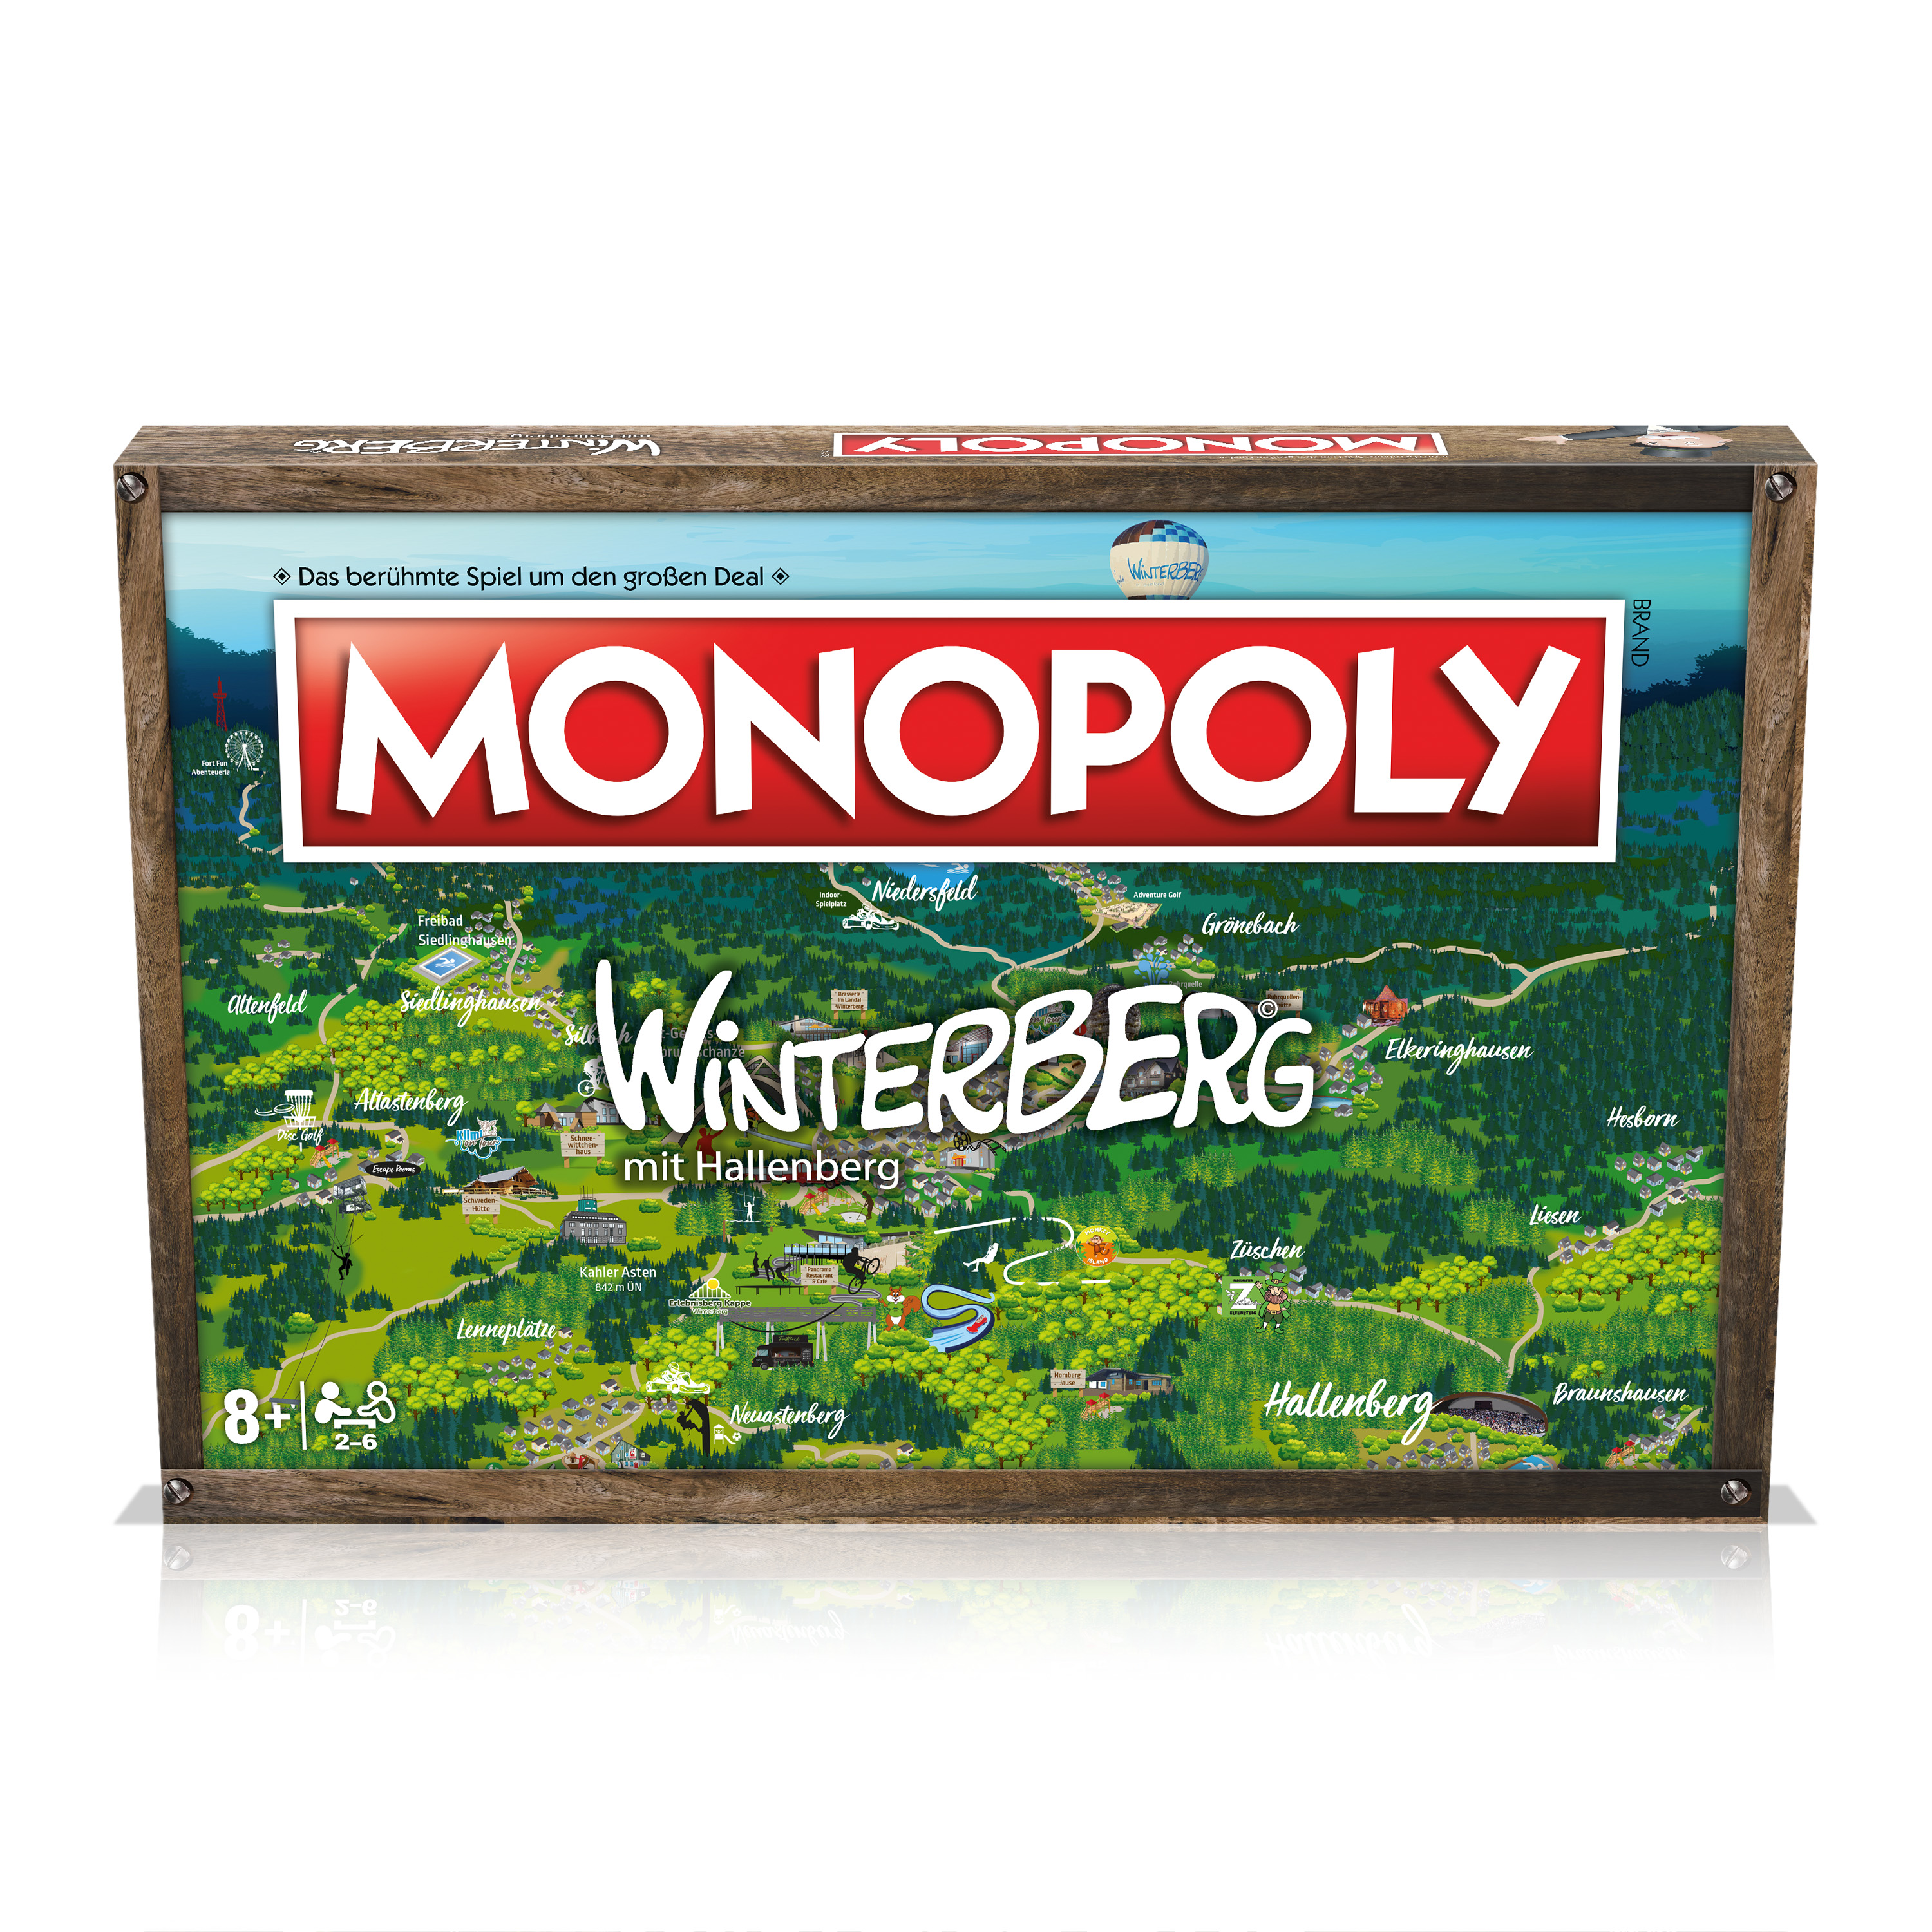 Monopoly WINNING Brettspiel MOVES - Winterberg